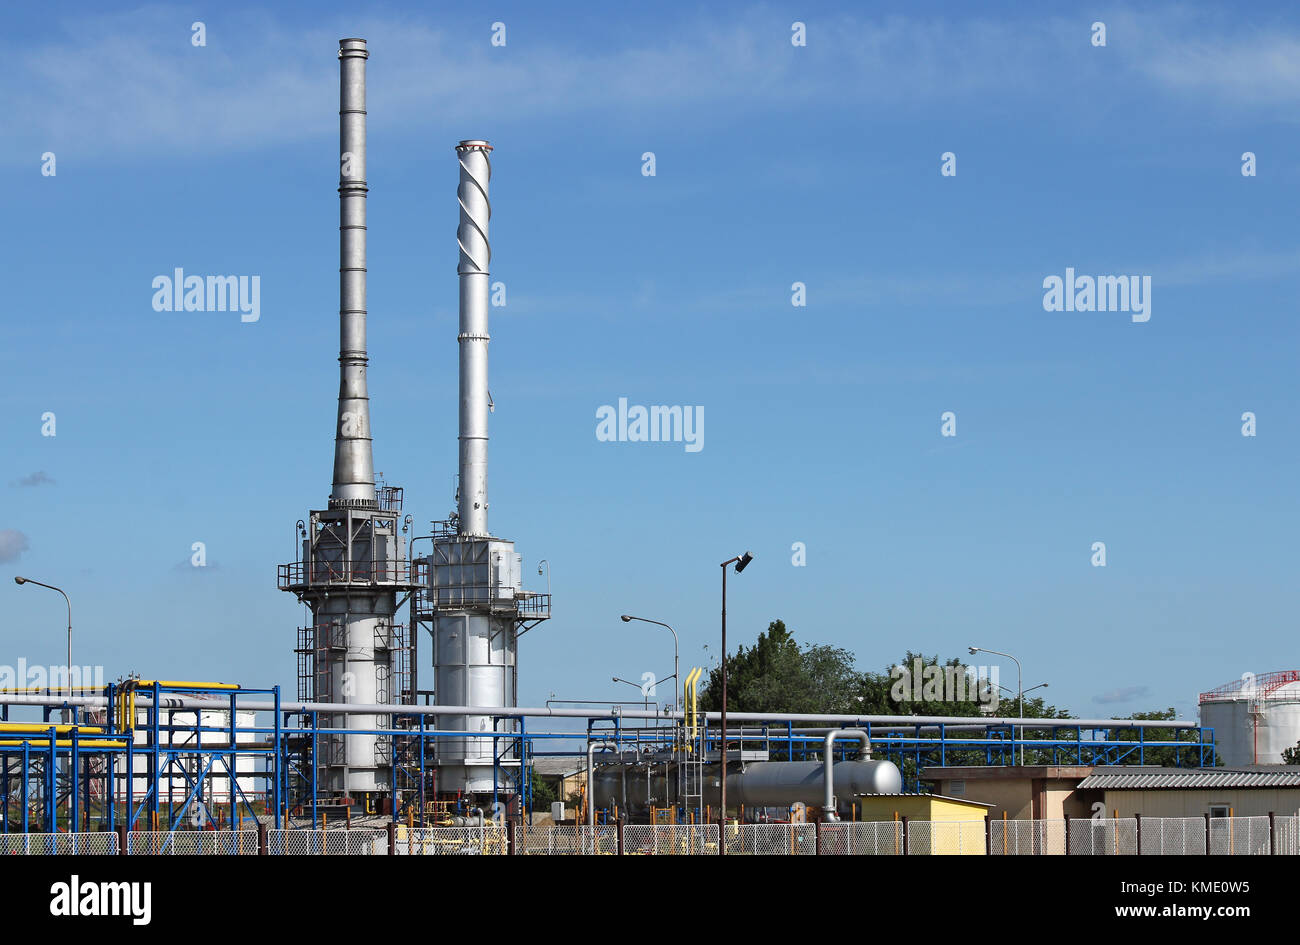 L'usine pétrochimique de la raffinerie de pétrole de la zone de l'industrie Banque D'Images